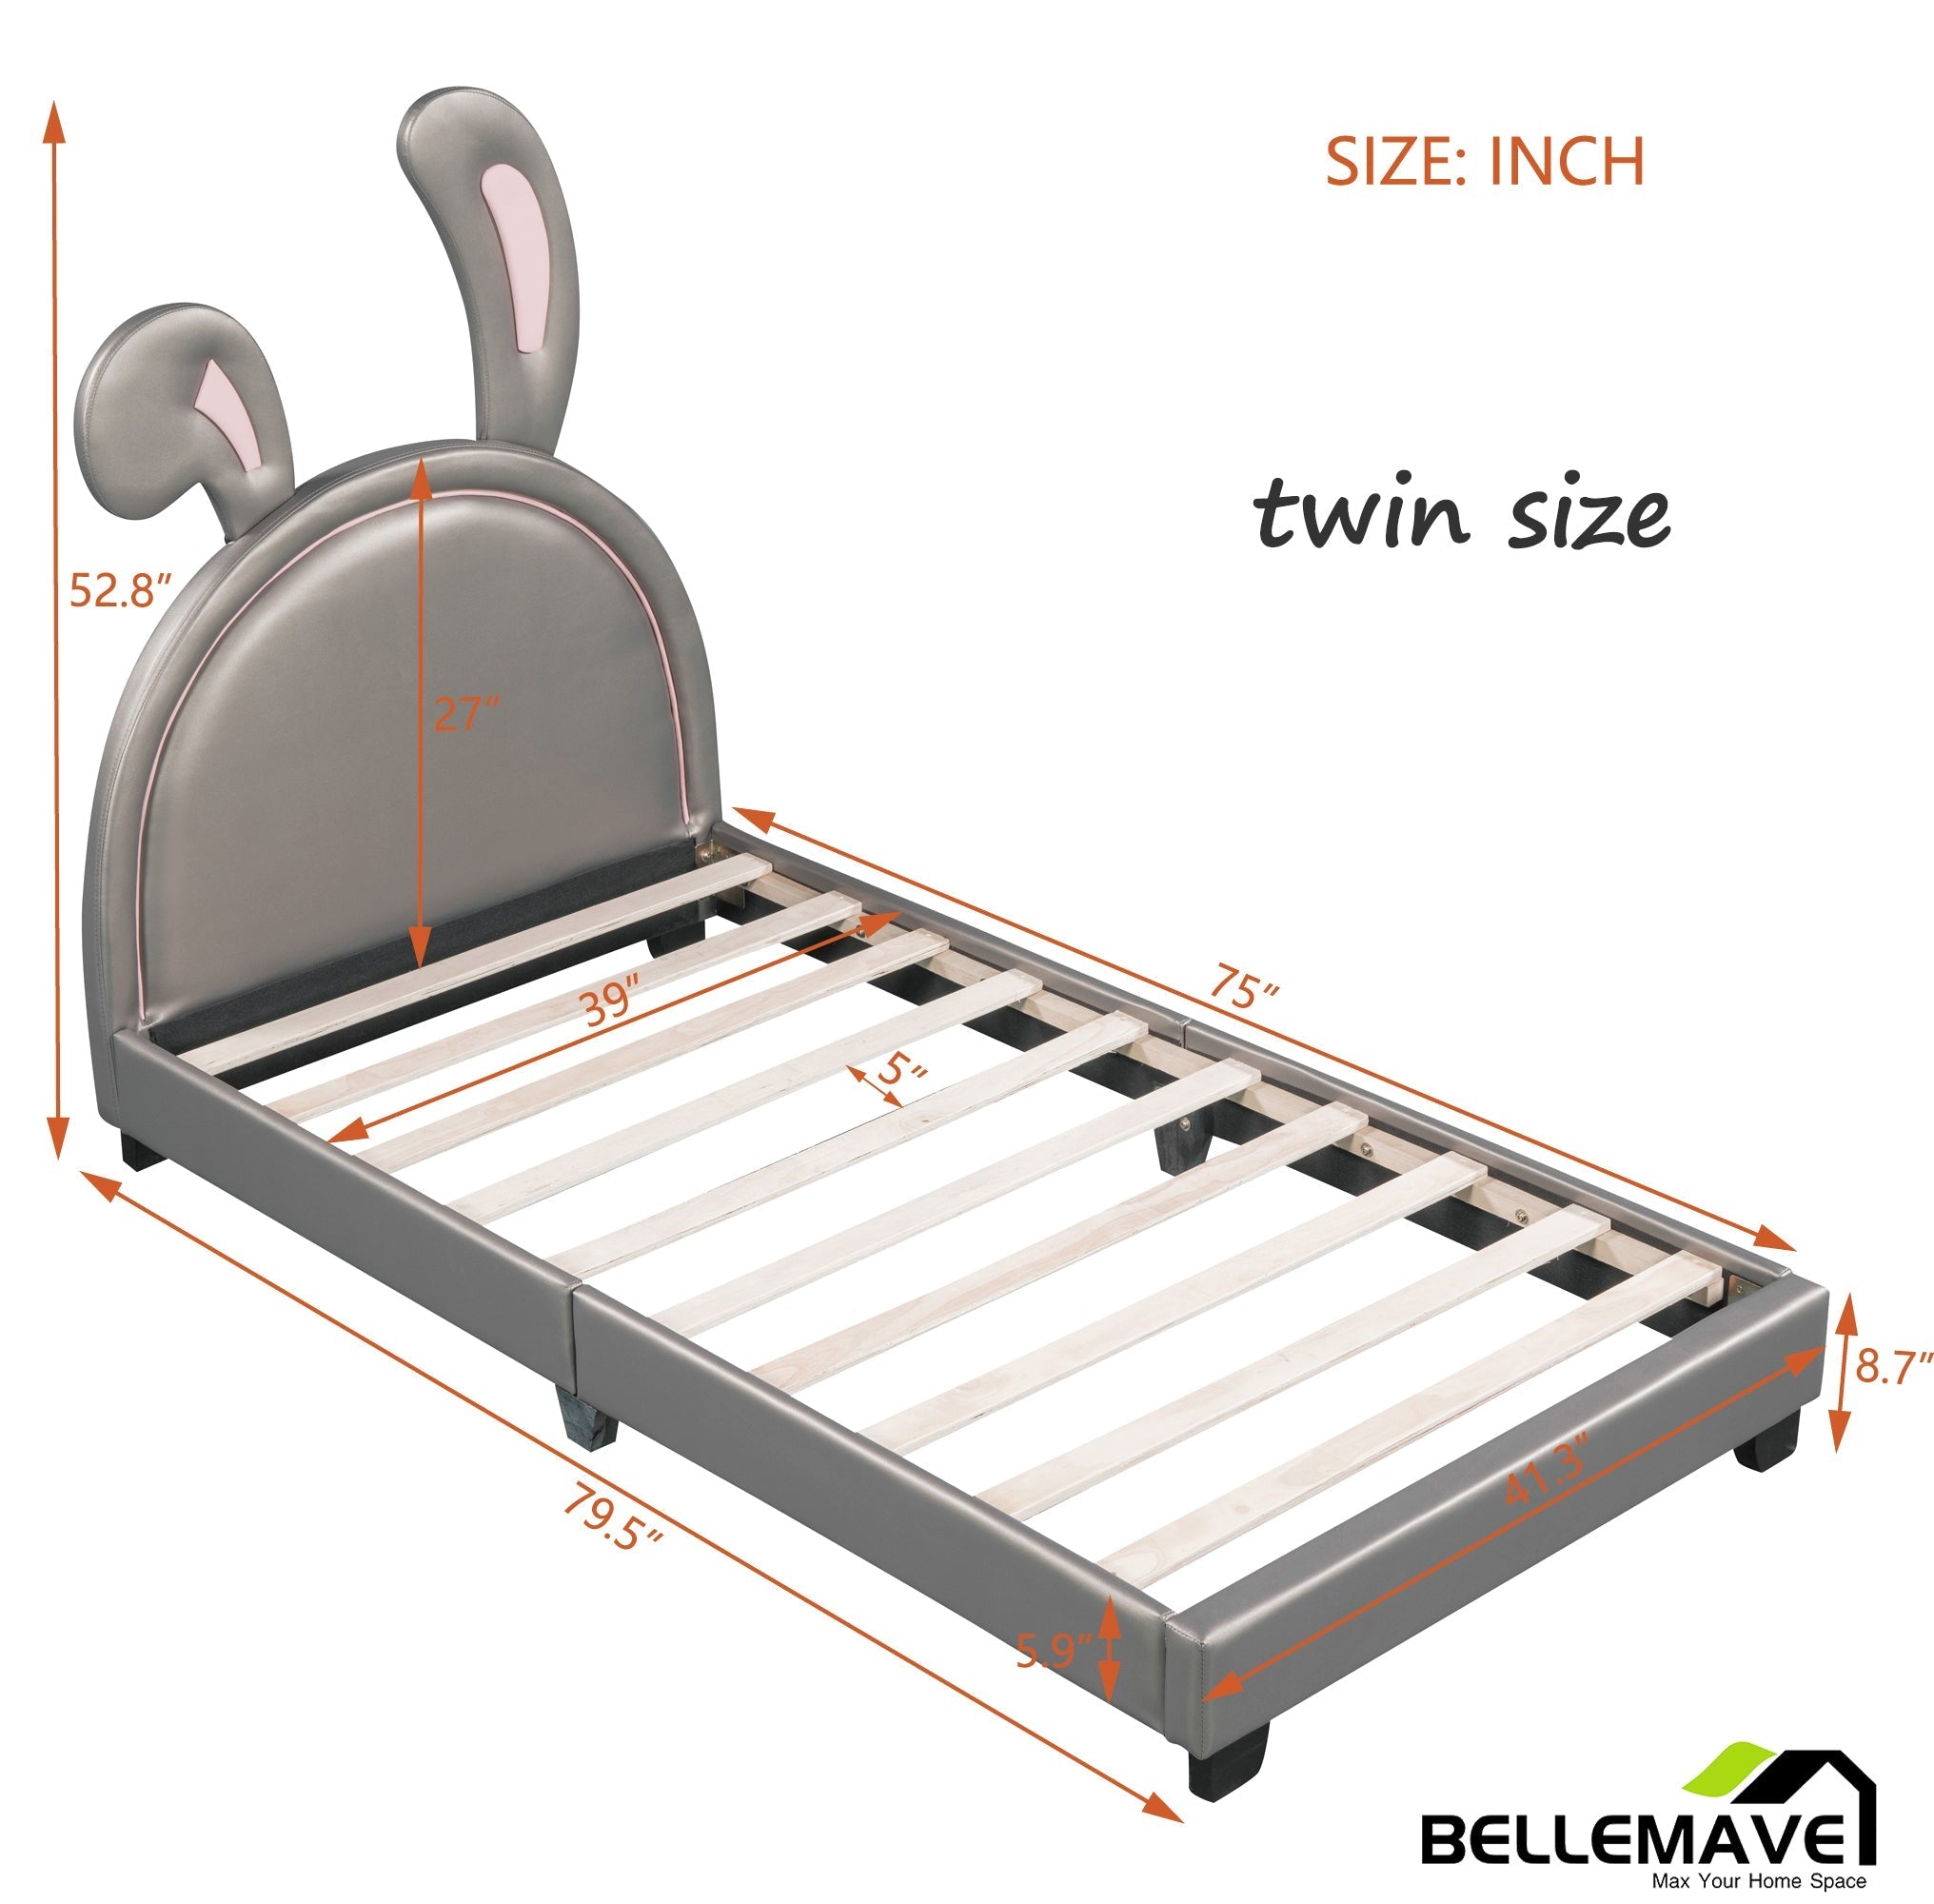 Bellemave PU Leather Upholstered Platform Bed with Rabbit Ornament - Bellemave